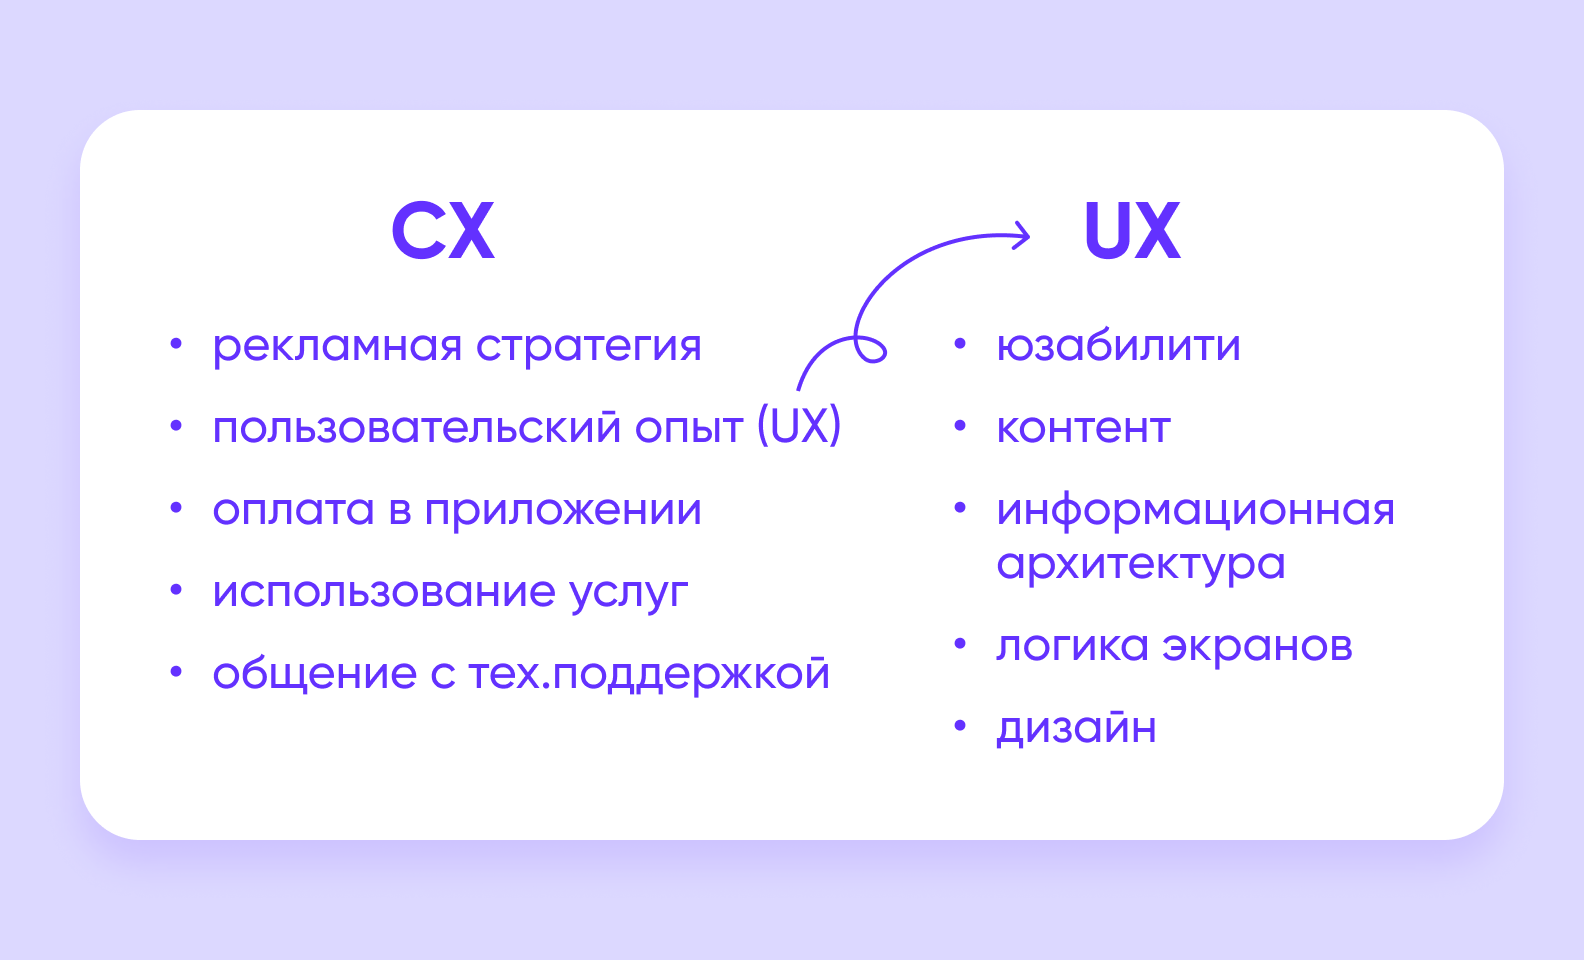 Клиентский и пользовательский опыт (CX и UX) – что важнее?